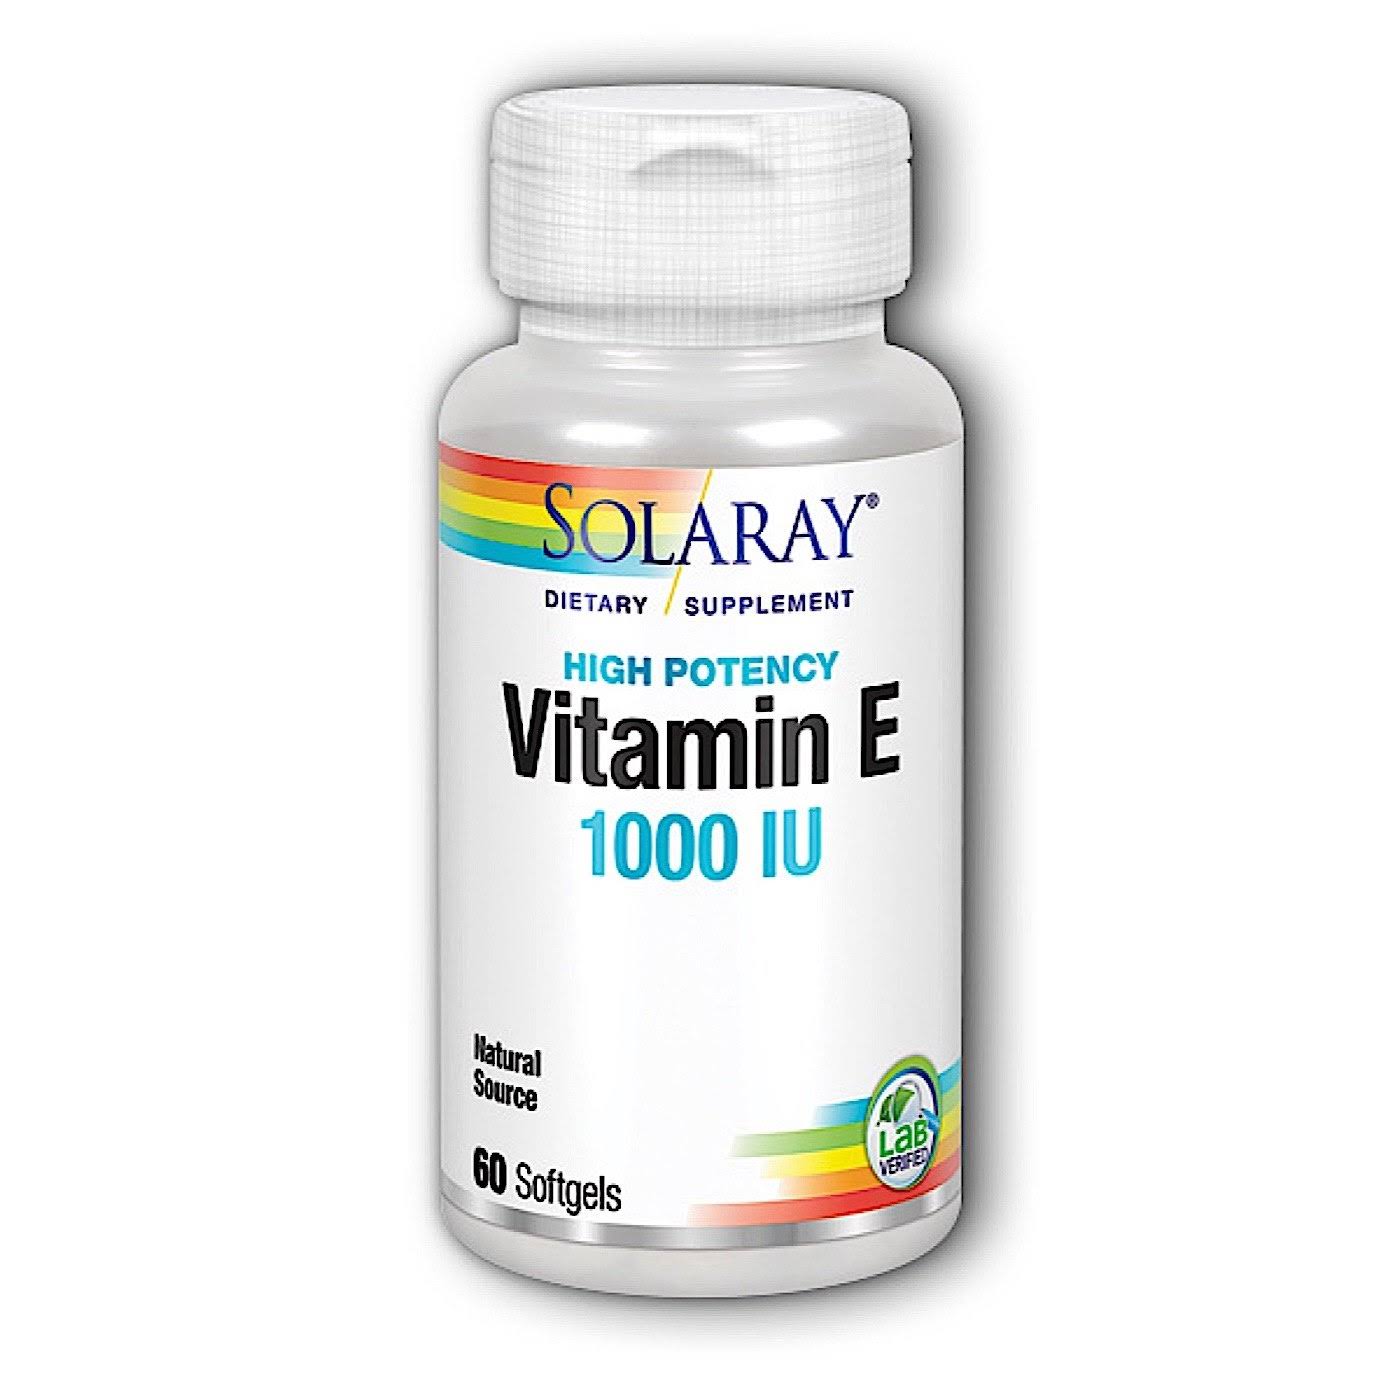 Solaray Vitamin E 1000 IU Supplement - 60ct